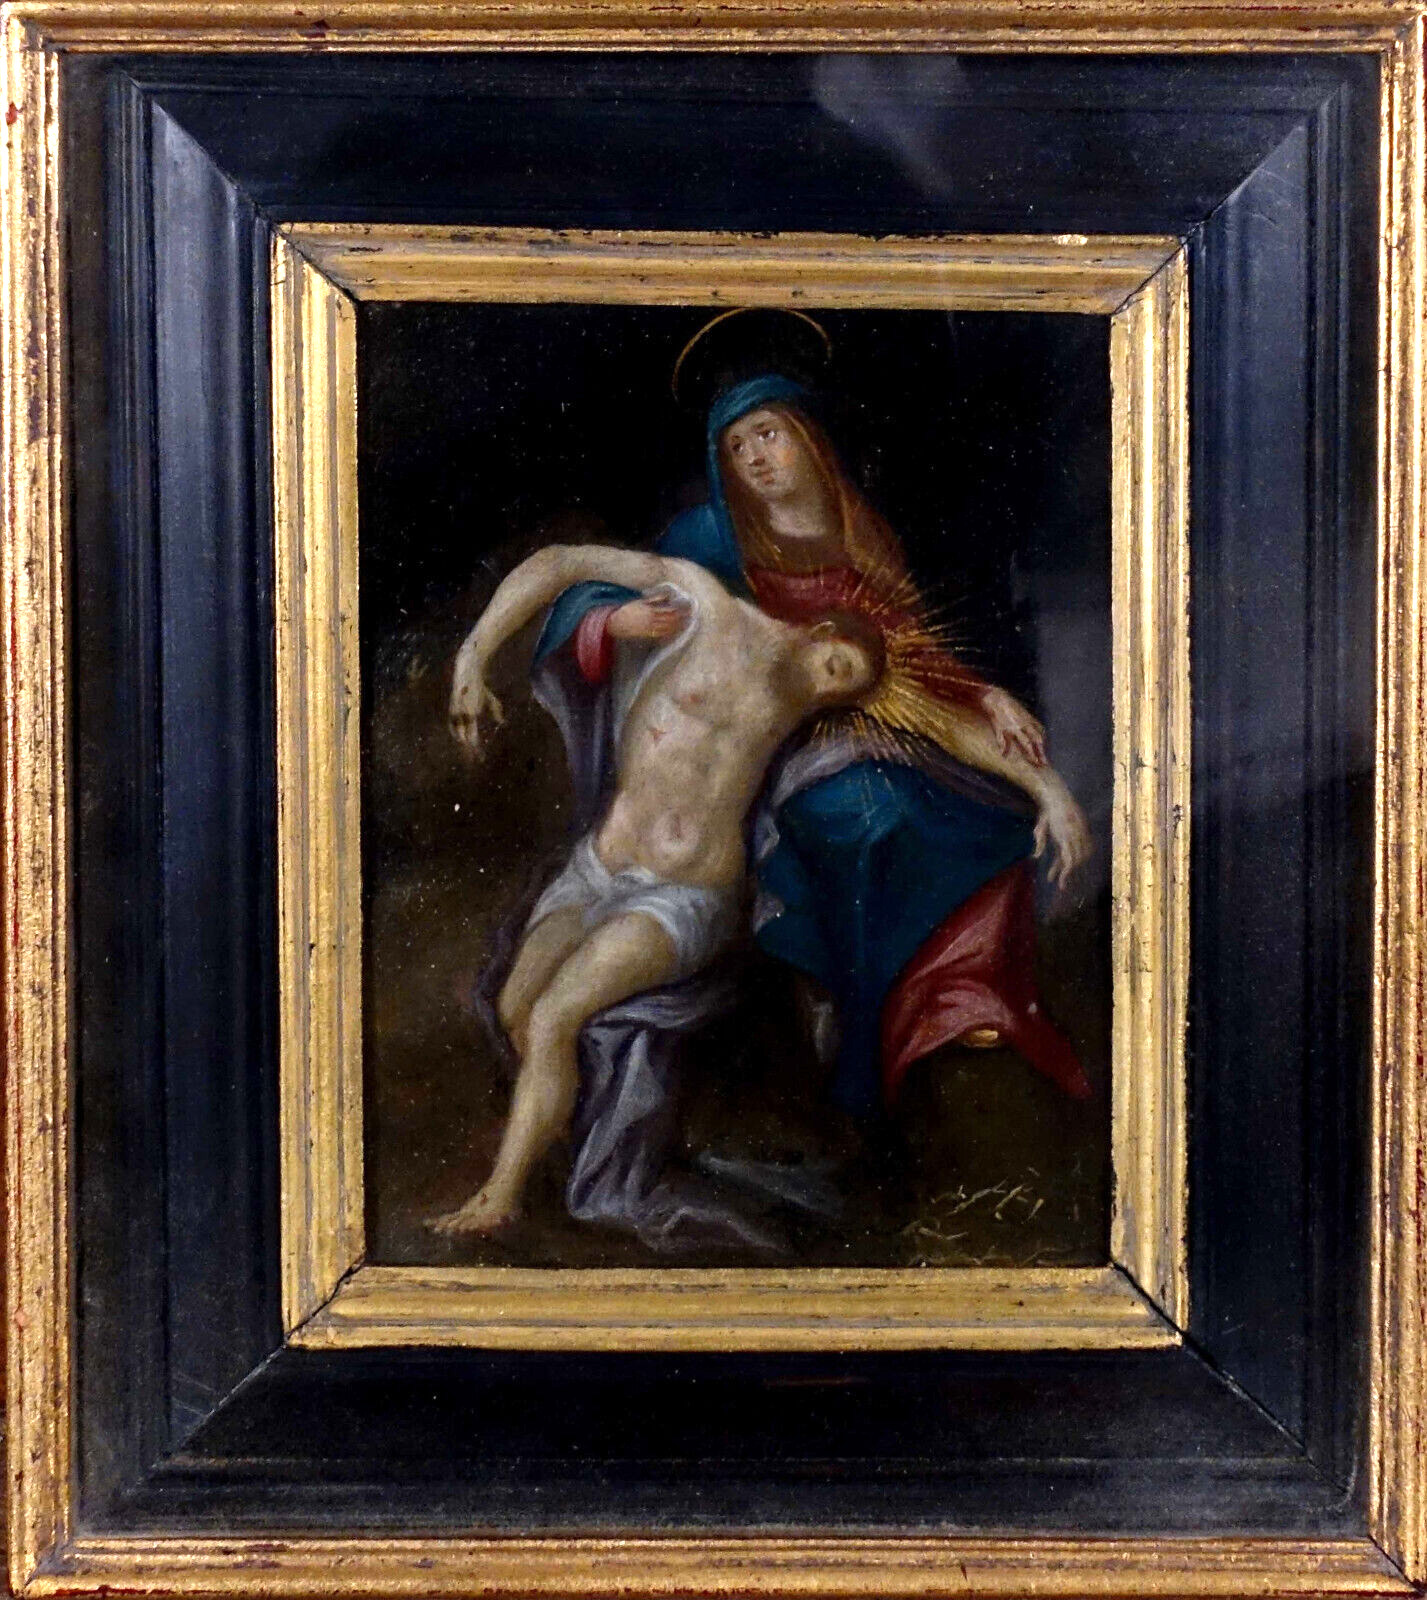 Antique Flemish school oil copper Pieta MAdonna jesus painting 19thc religious